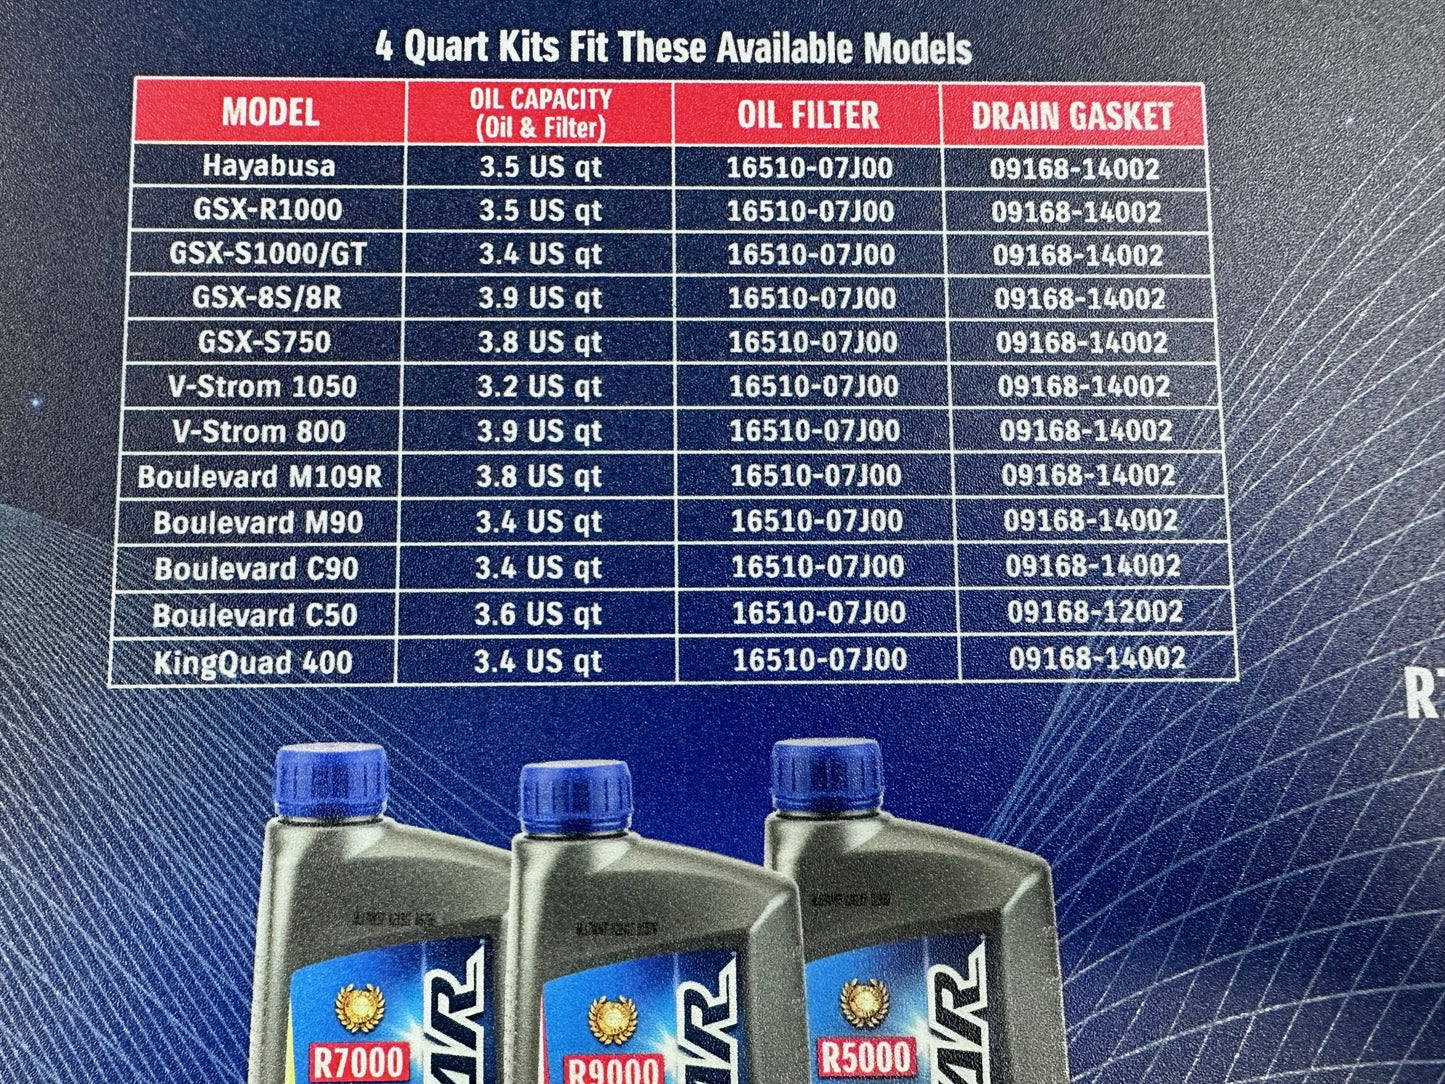 Suzuki ECSTAR R5000 Oil Change Kit 4 Quart 990A0-01E10-4KT